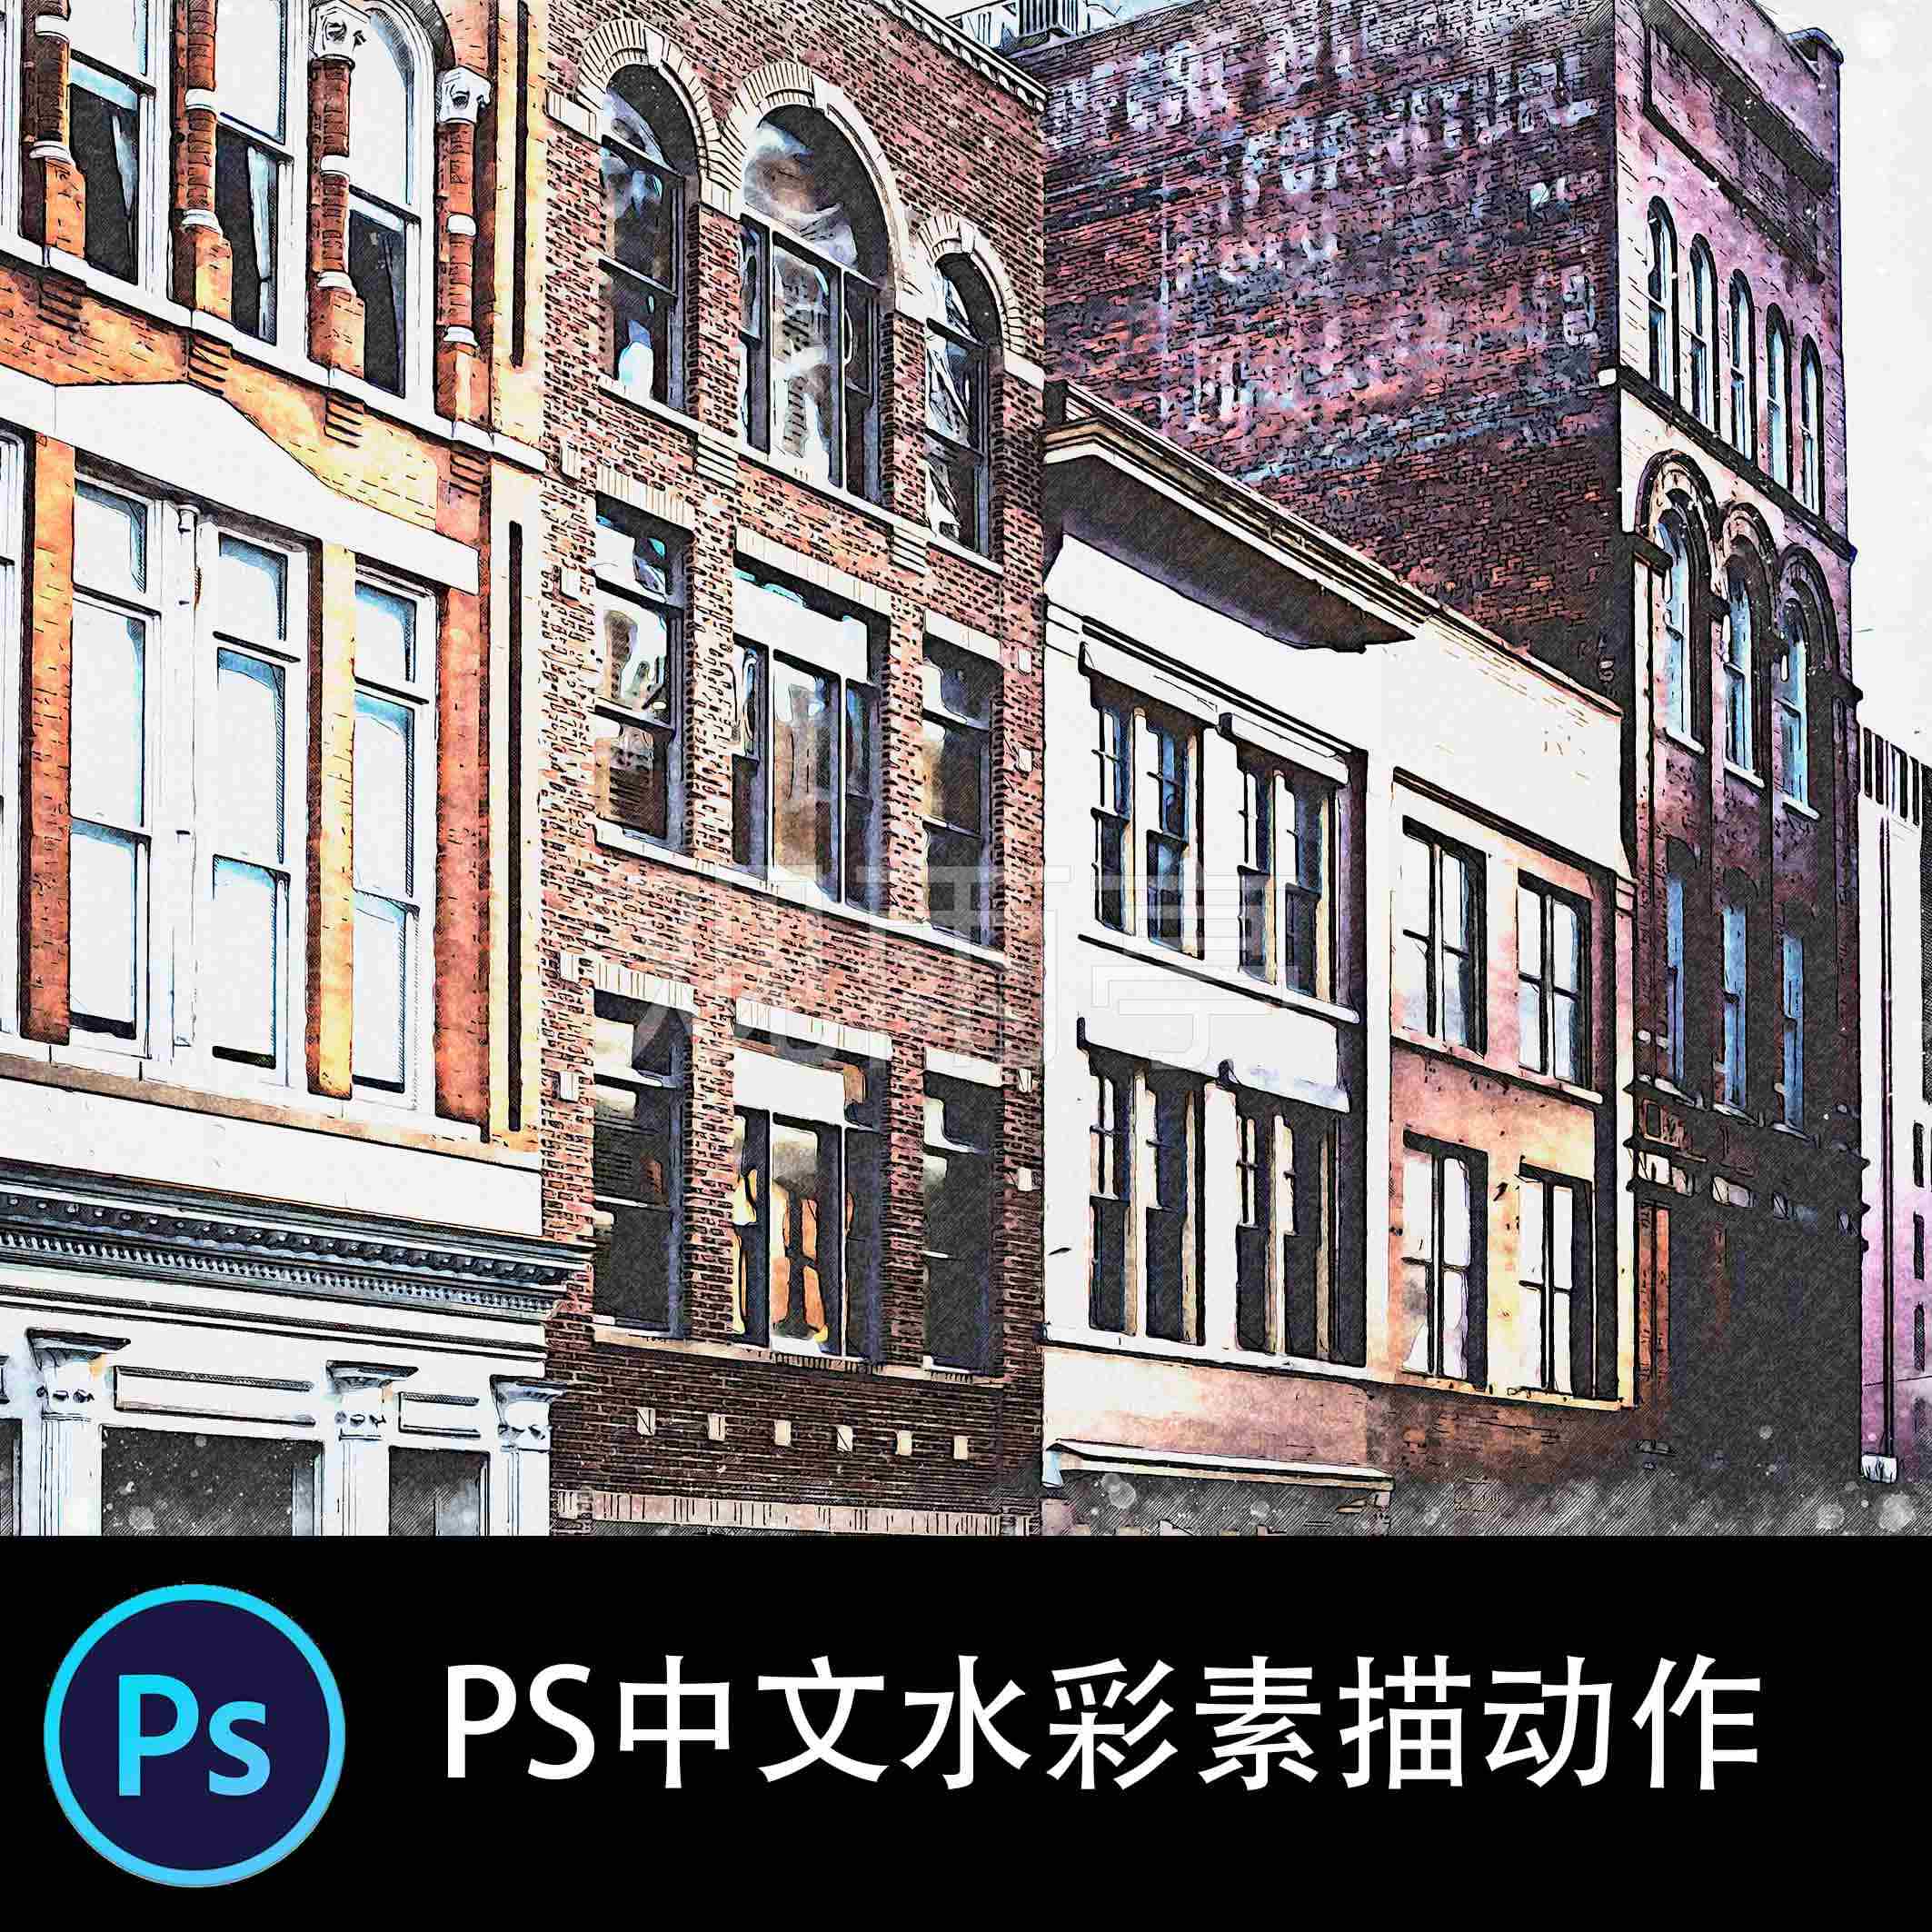 PS中文特效动作 城市街道照片混合水彩素描效果照片后期滤镜插件